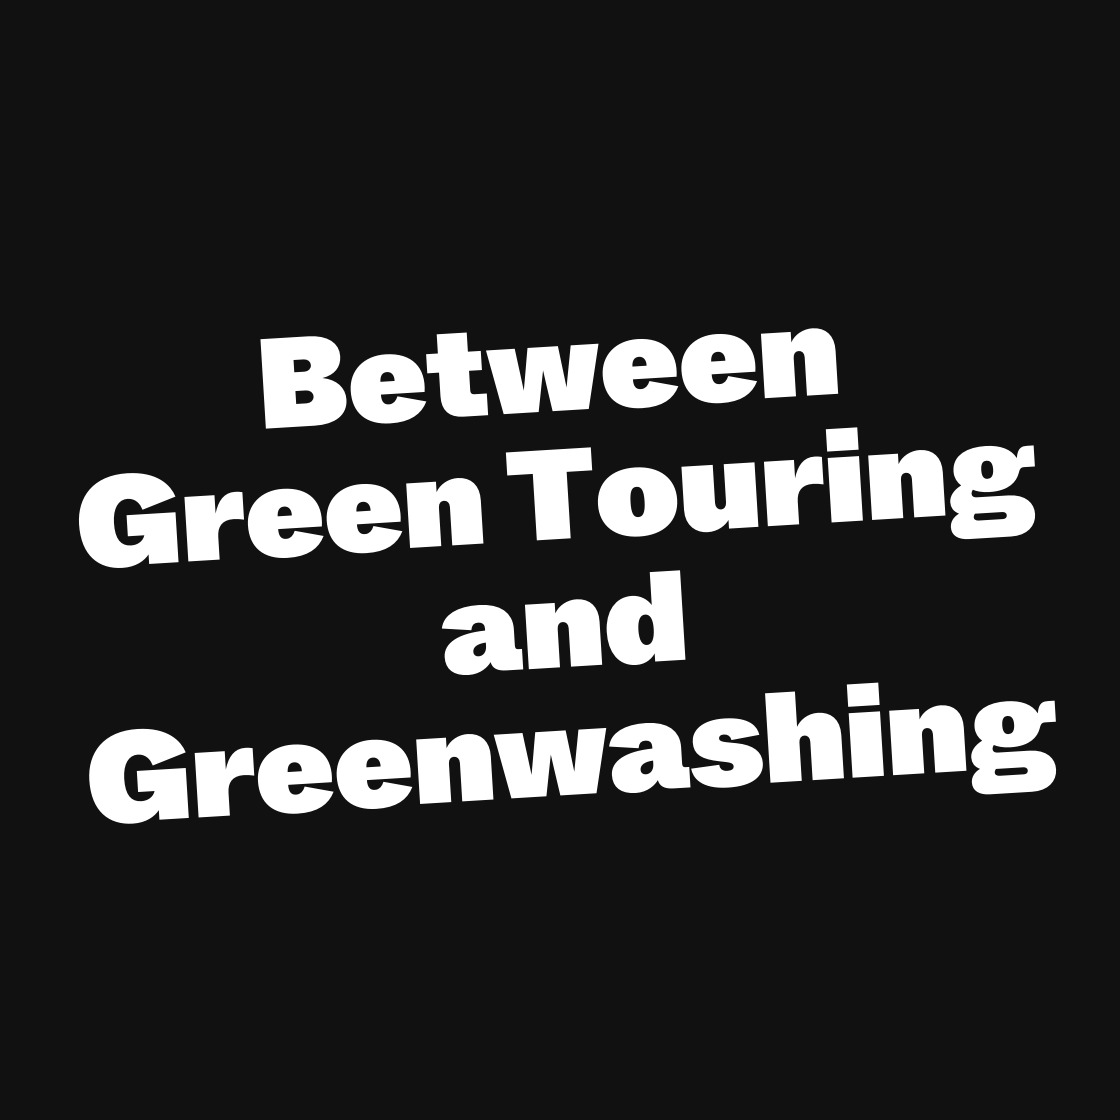 Zwischen Green Touring und Greenwashing